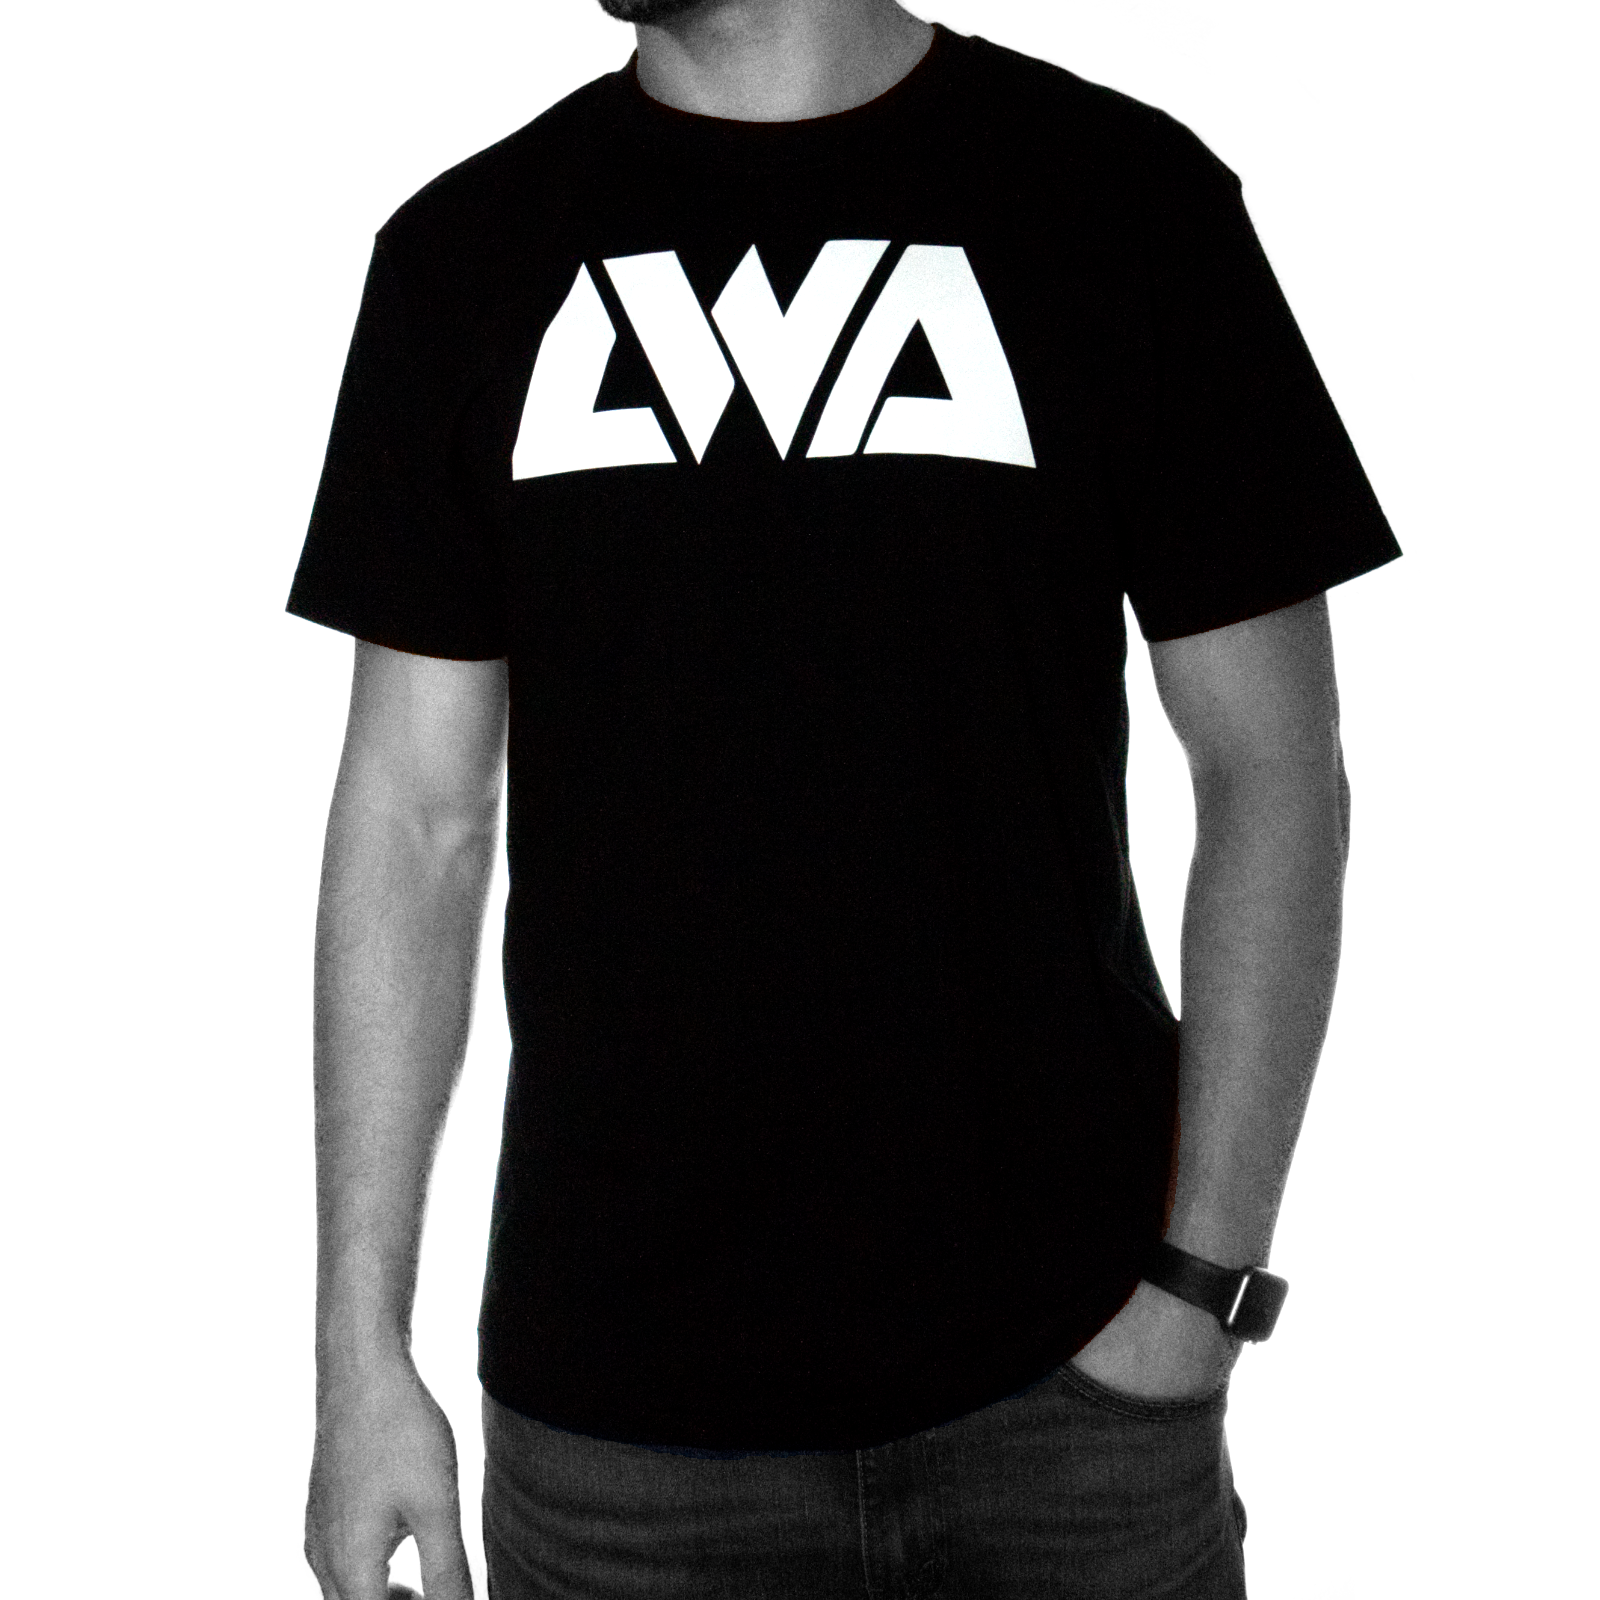 LWA New Icon Black/White